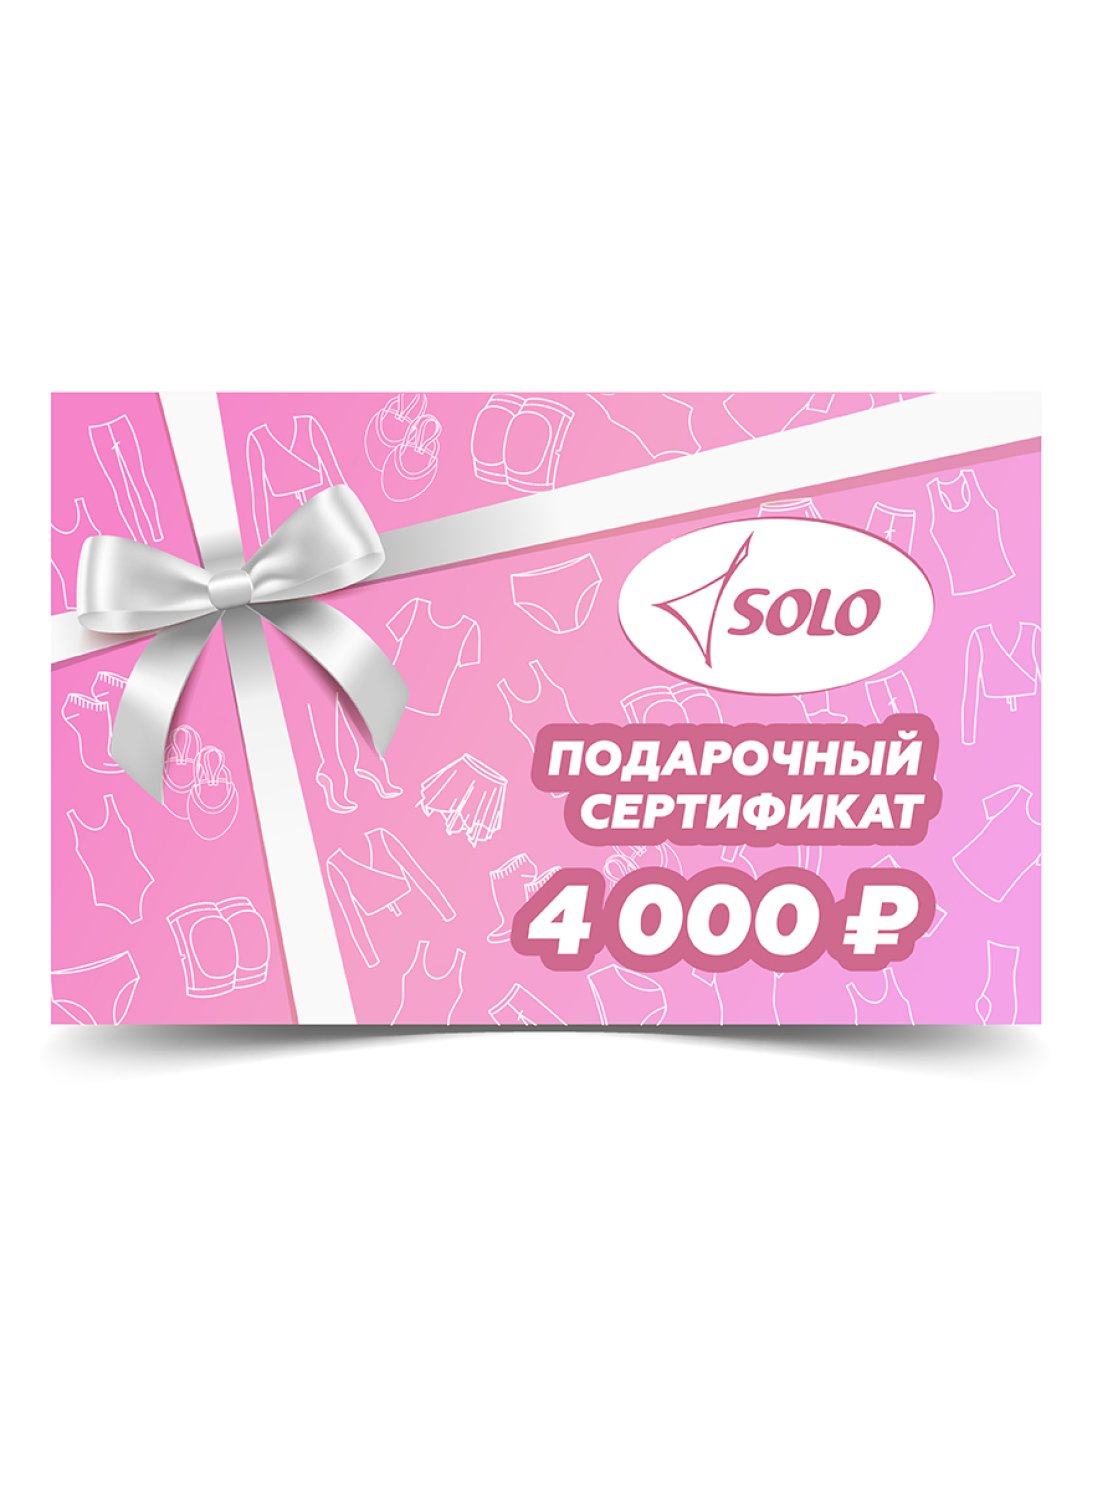 Электронный подарочный сертификат номиналом 4 000 рублей